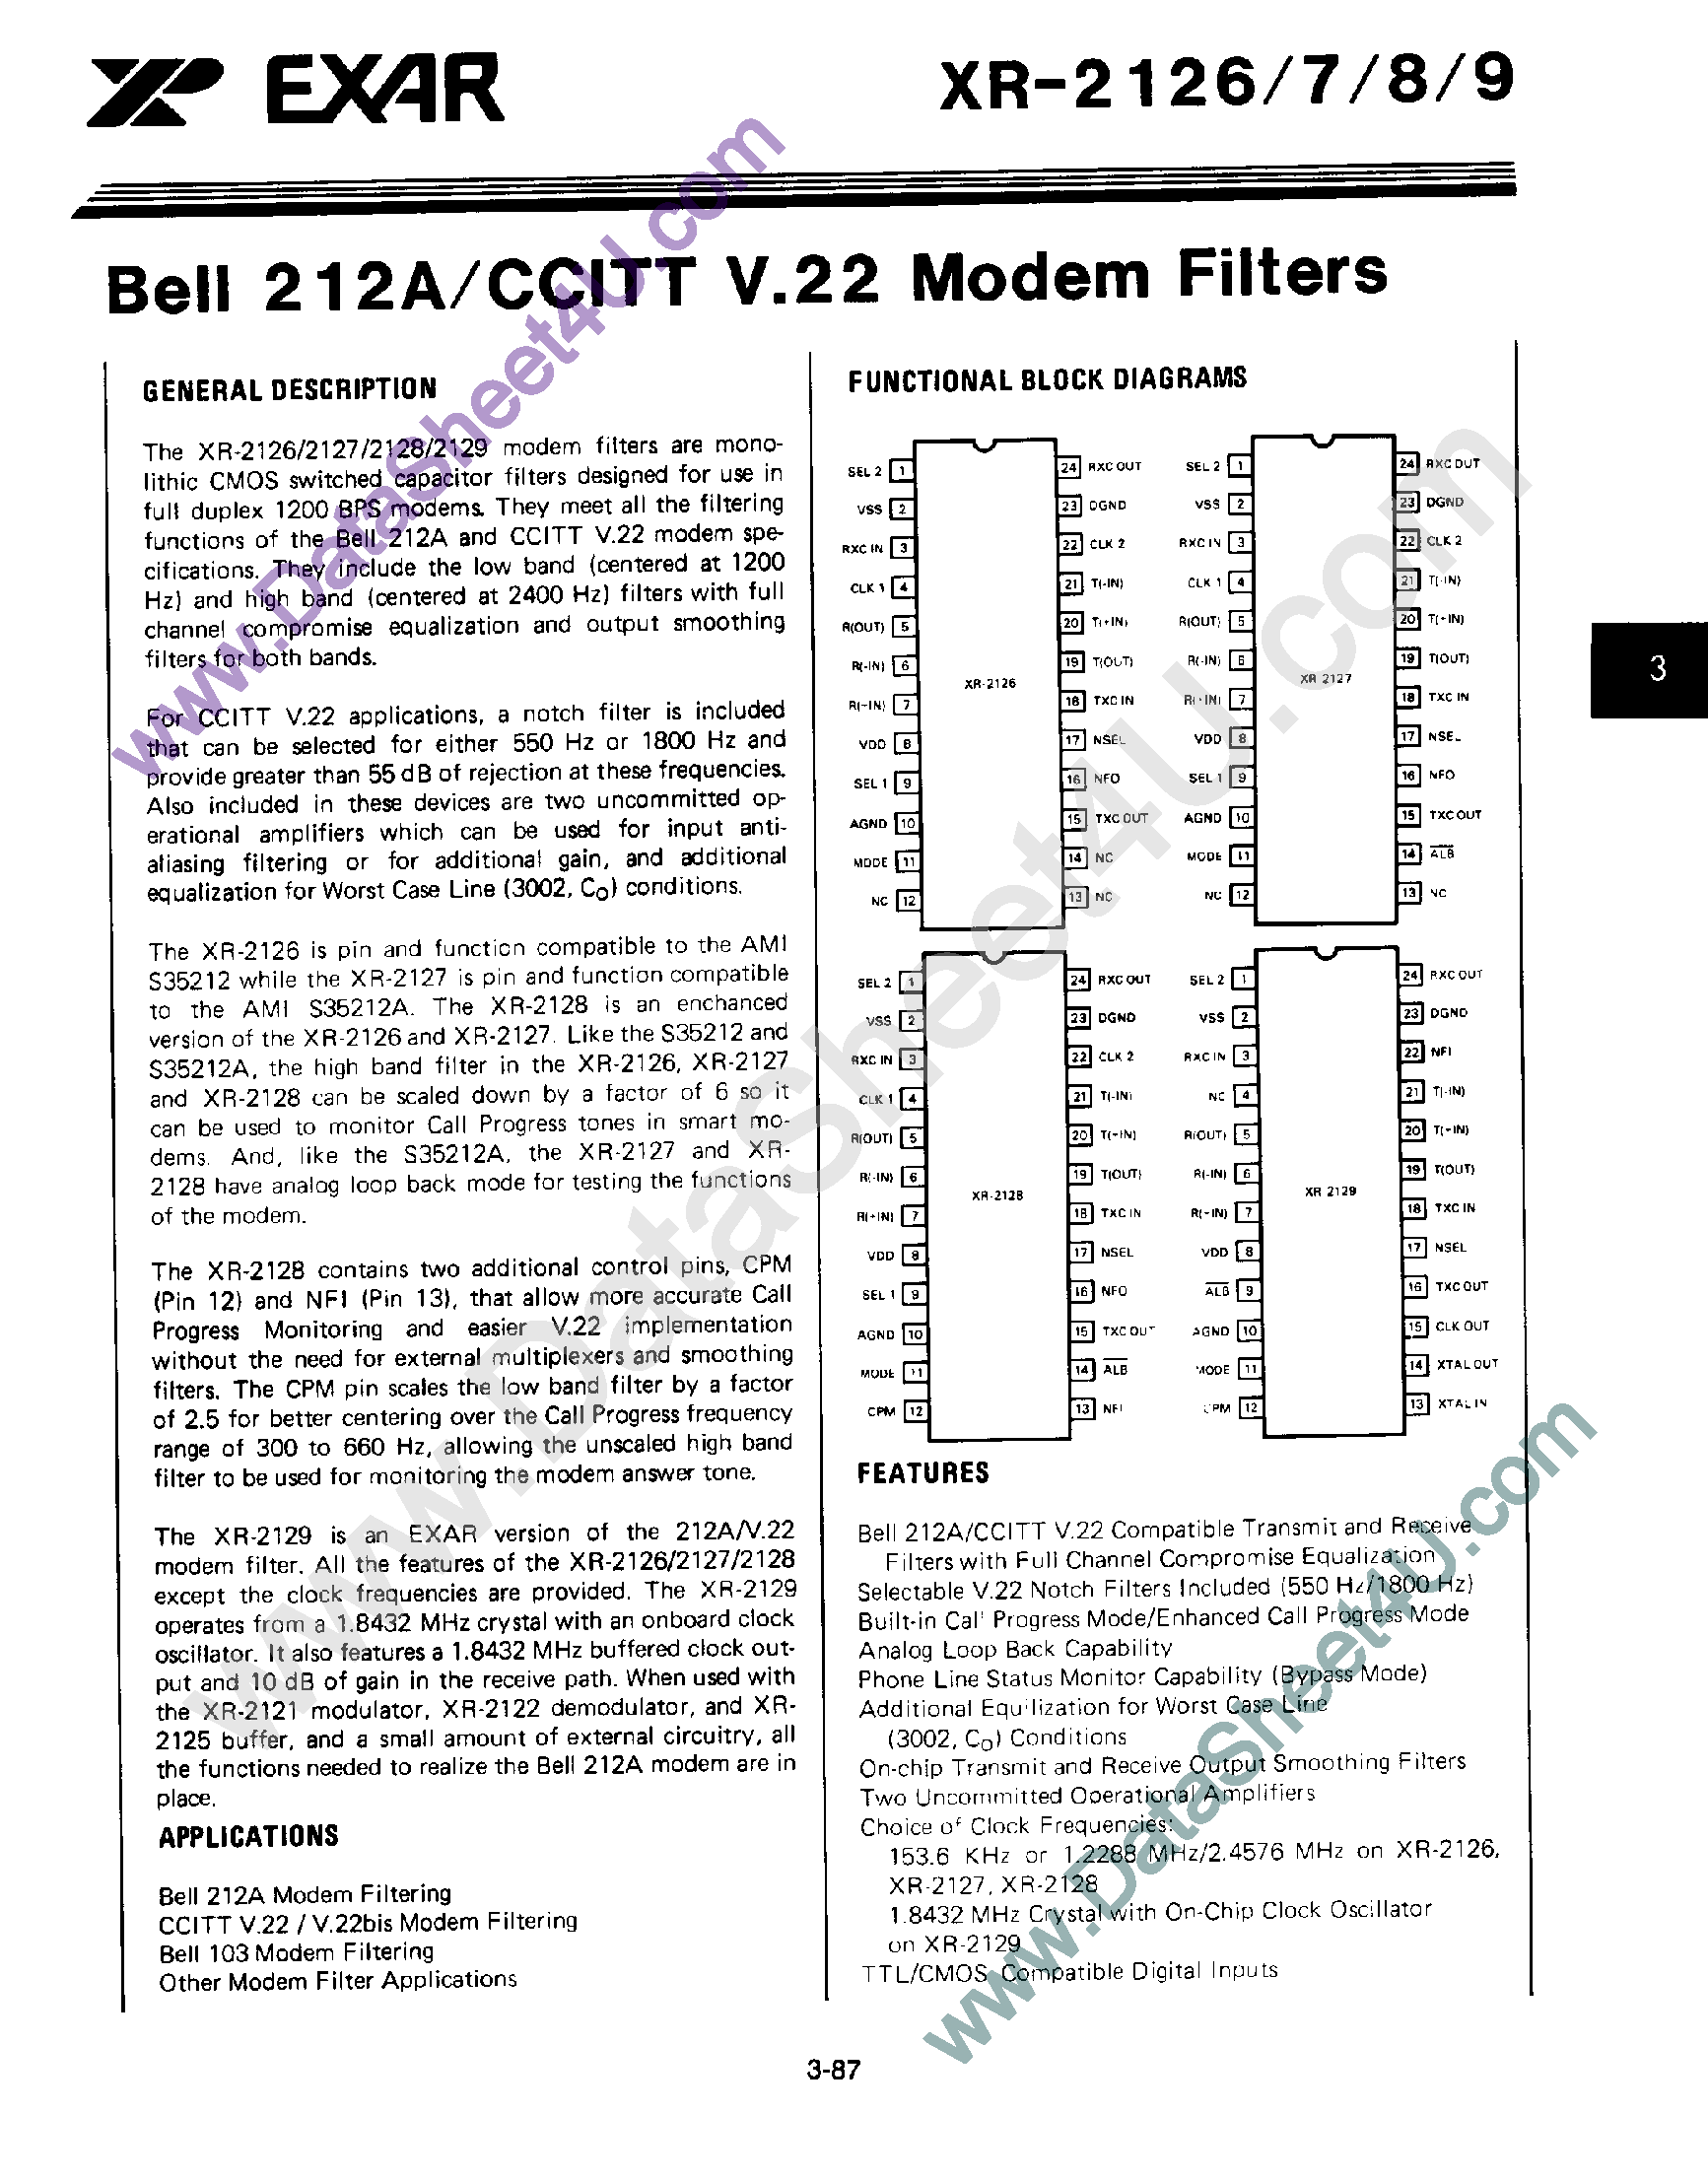 Datasheet XR-2128 - Bell 212A / CCITT V.22 Modem Filters page 1